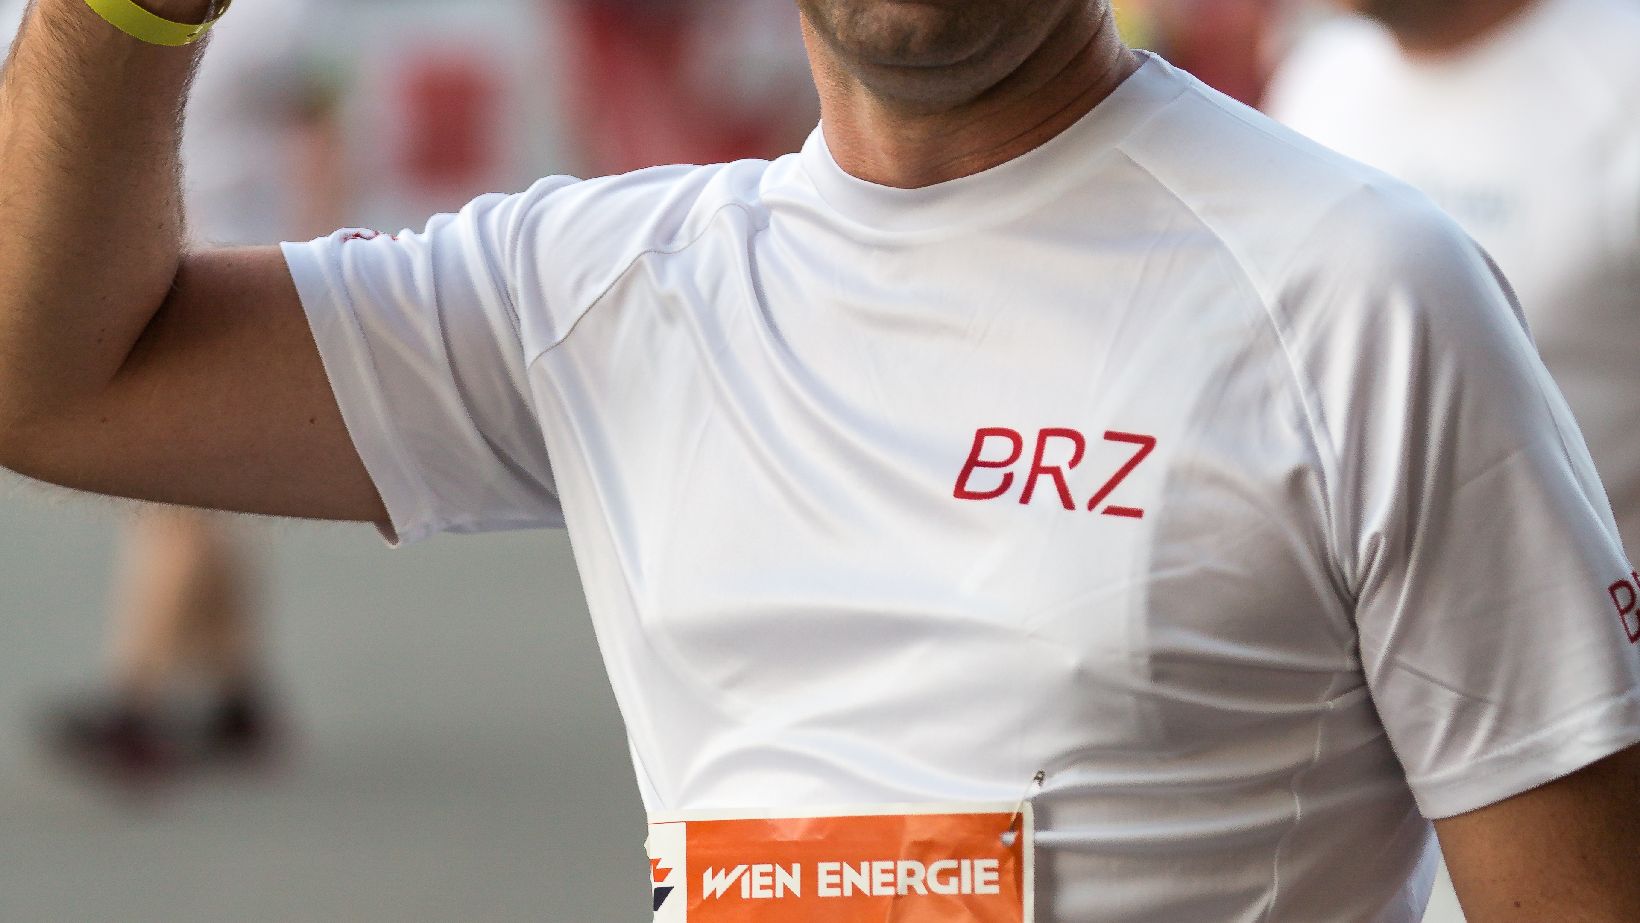 BRZ-Läufer in weißem Laufshirt, macht Victory-zeichen mit der rechten Hand